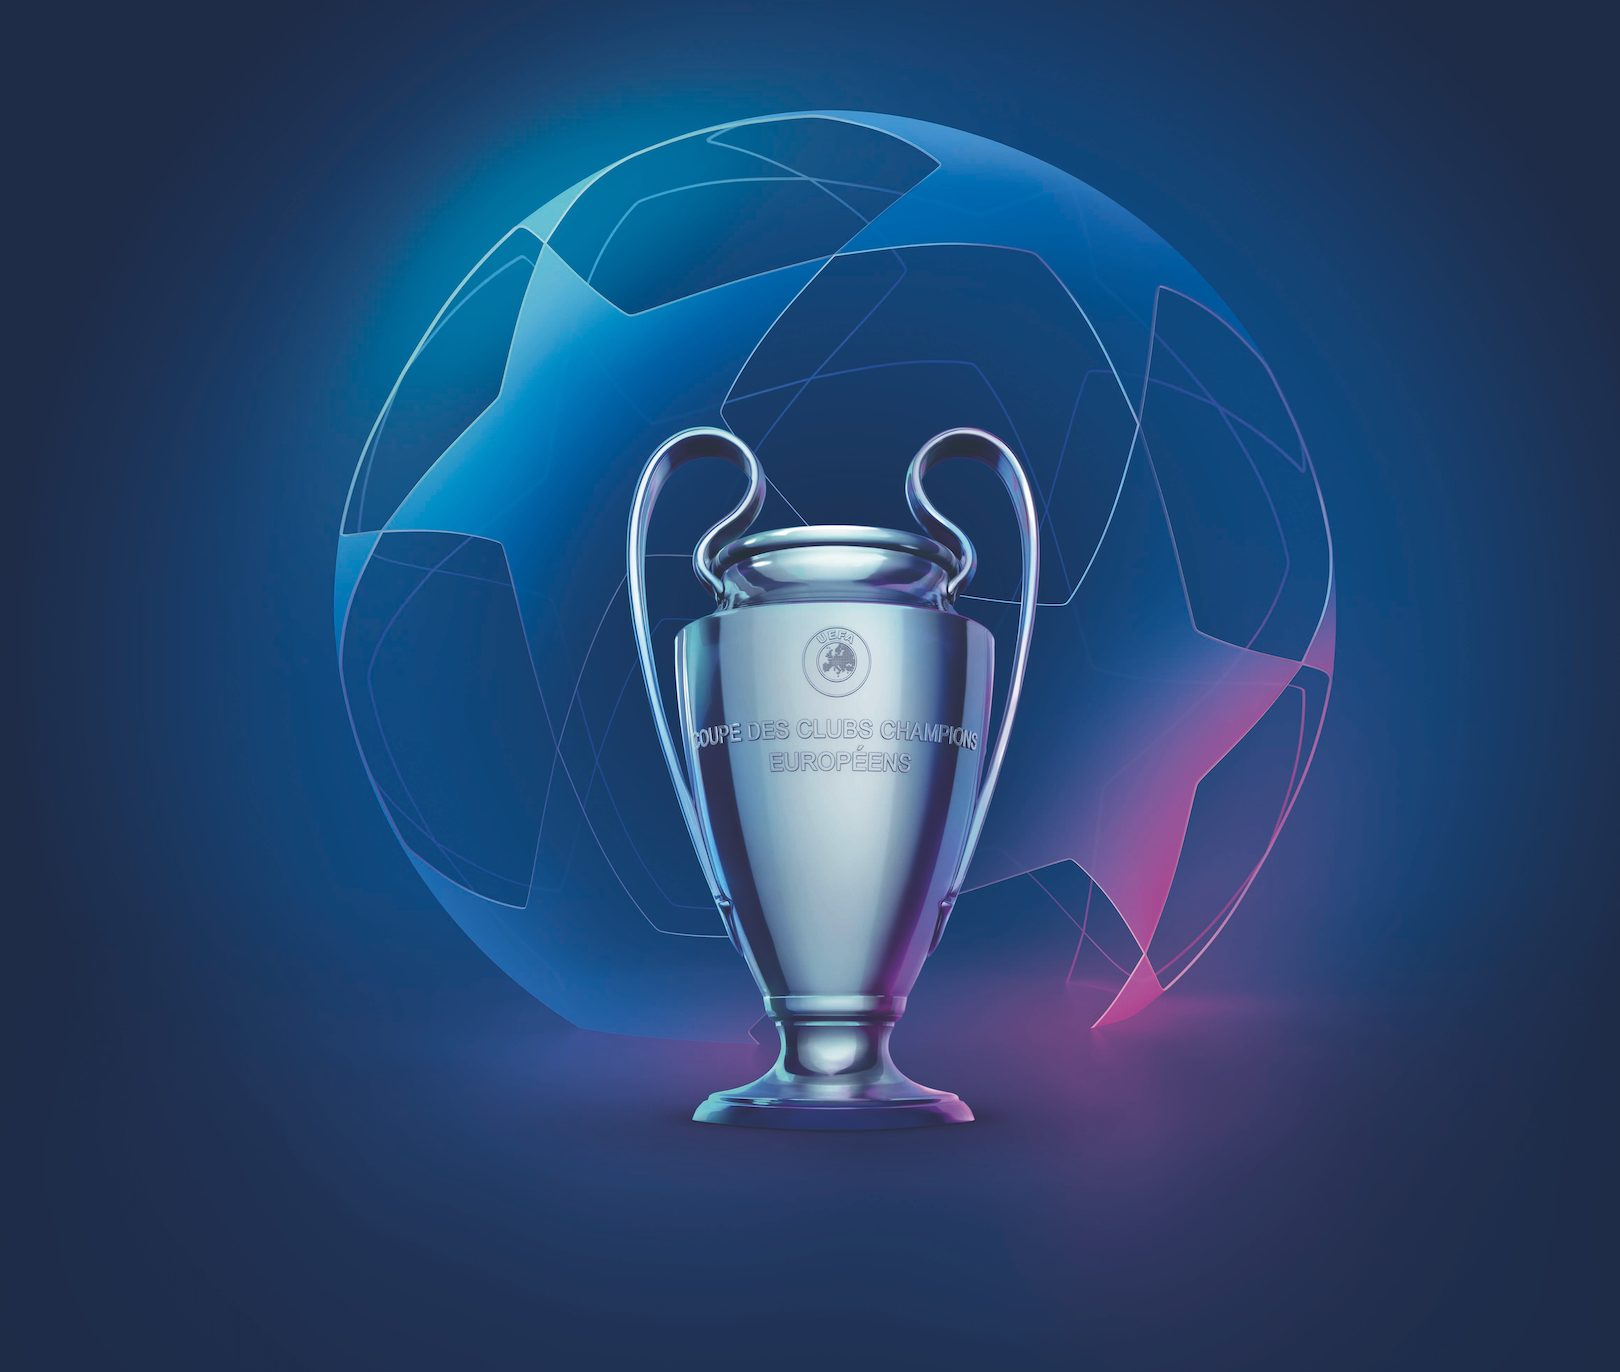 UEFA champs